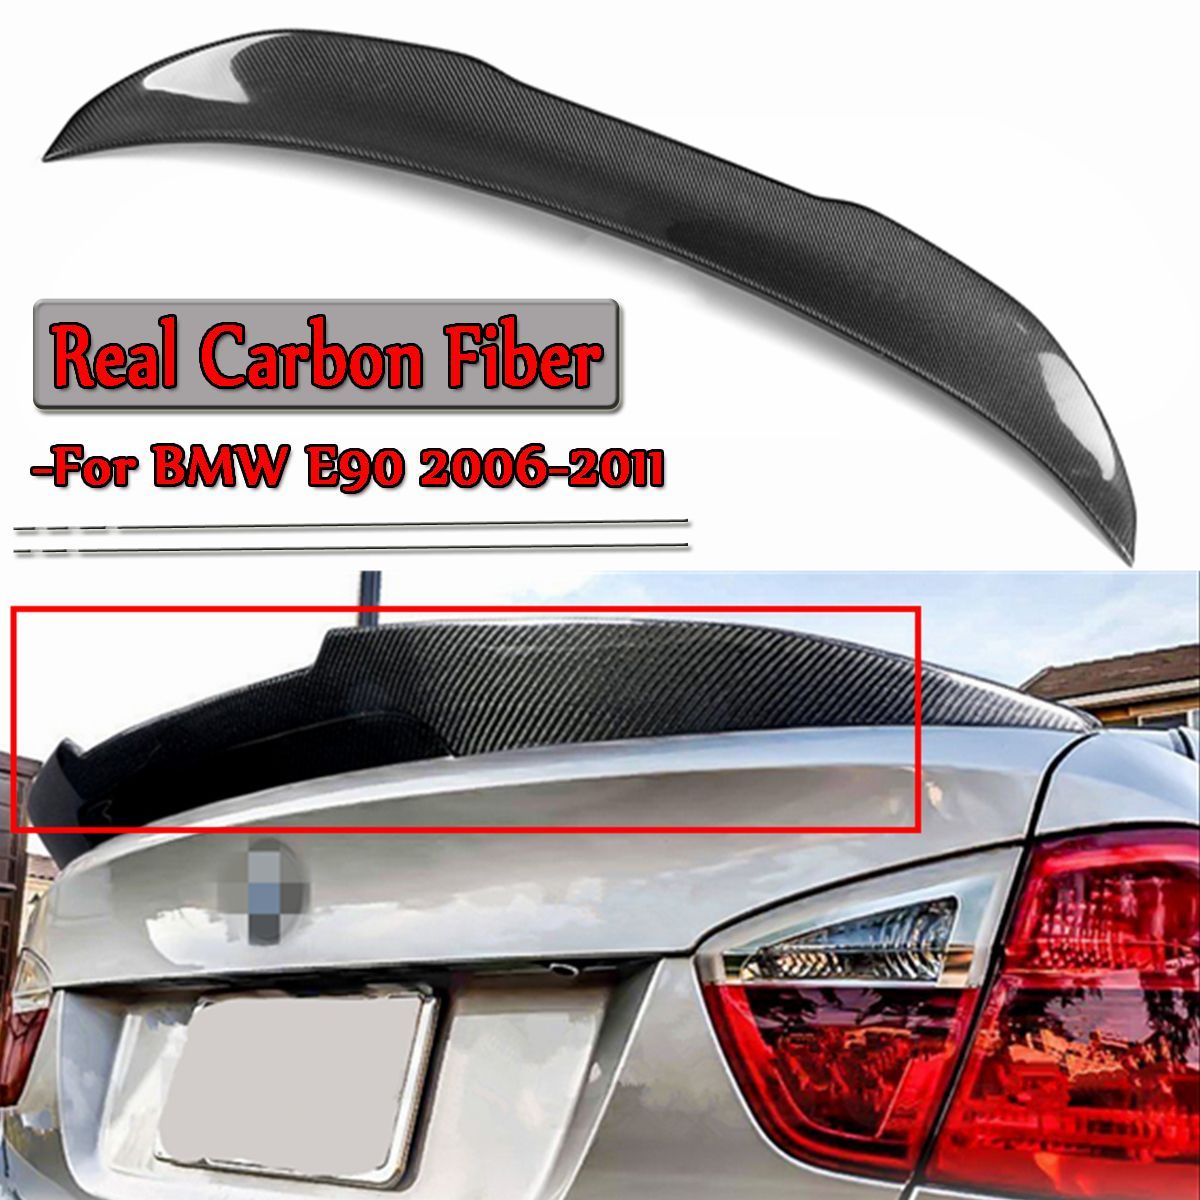 Real-Carbon-Fiber-Car-Trunk-Spoiler-Lid-Wing-For-BMW-E90-3-Series-M3-4-Door-Sedan-2006-2011-1540687